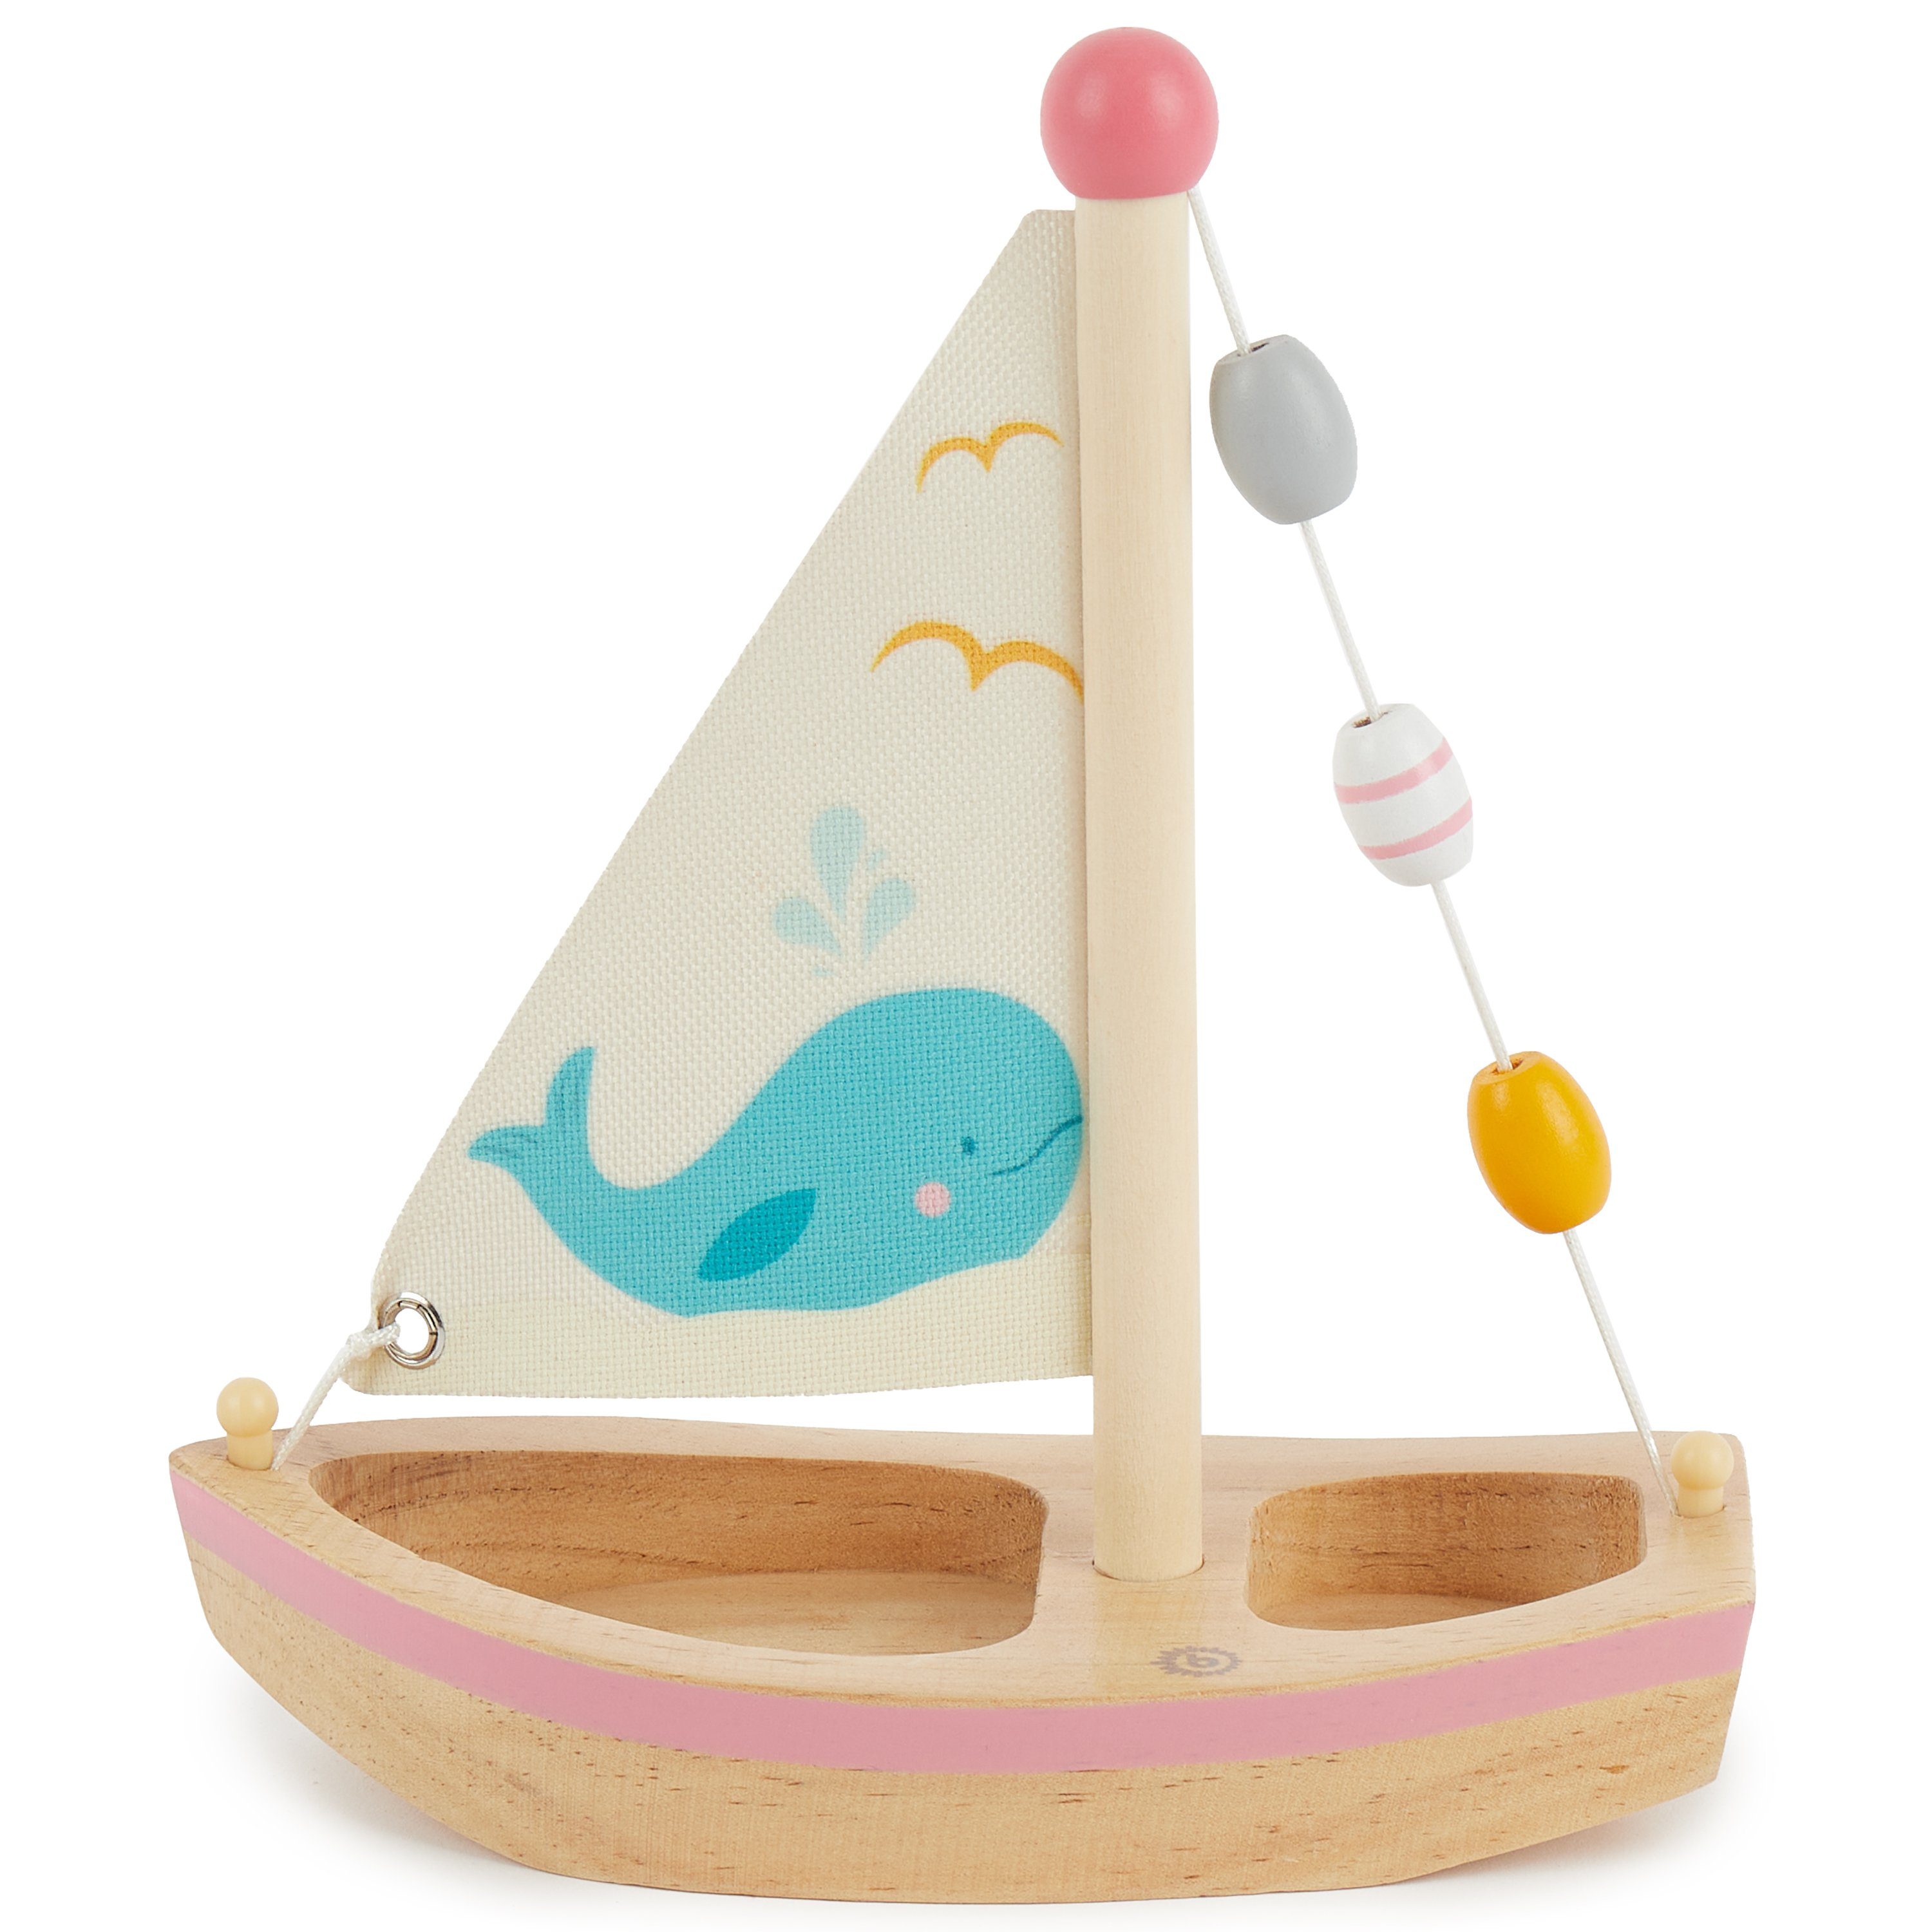 Deko Holzboot Spielzeug 20x18 Spielzeug cm Segelboot Badespielzeug Boot Schiff Spielzeug Holz Strand Bieco Kinder Schwimmfähig Segel BIECO für Spielzeug Wasser Spielzeug Spielsachen Segelboot Wasser mit